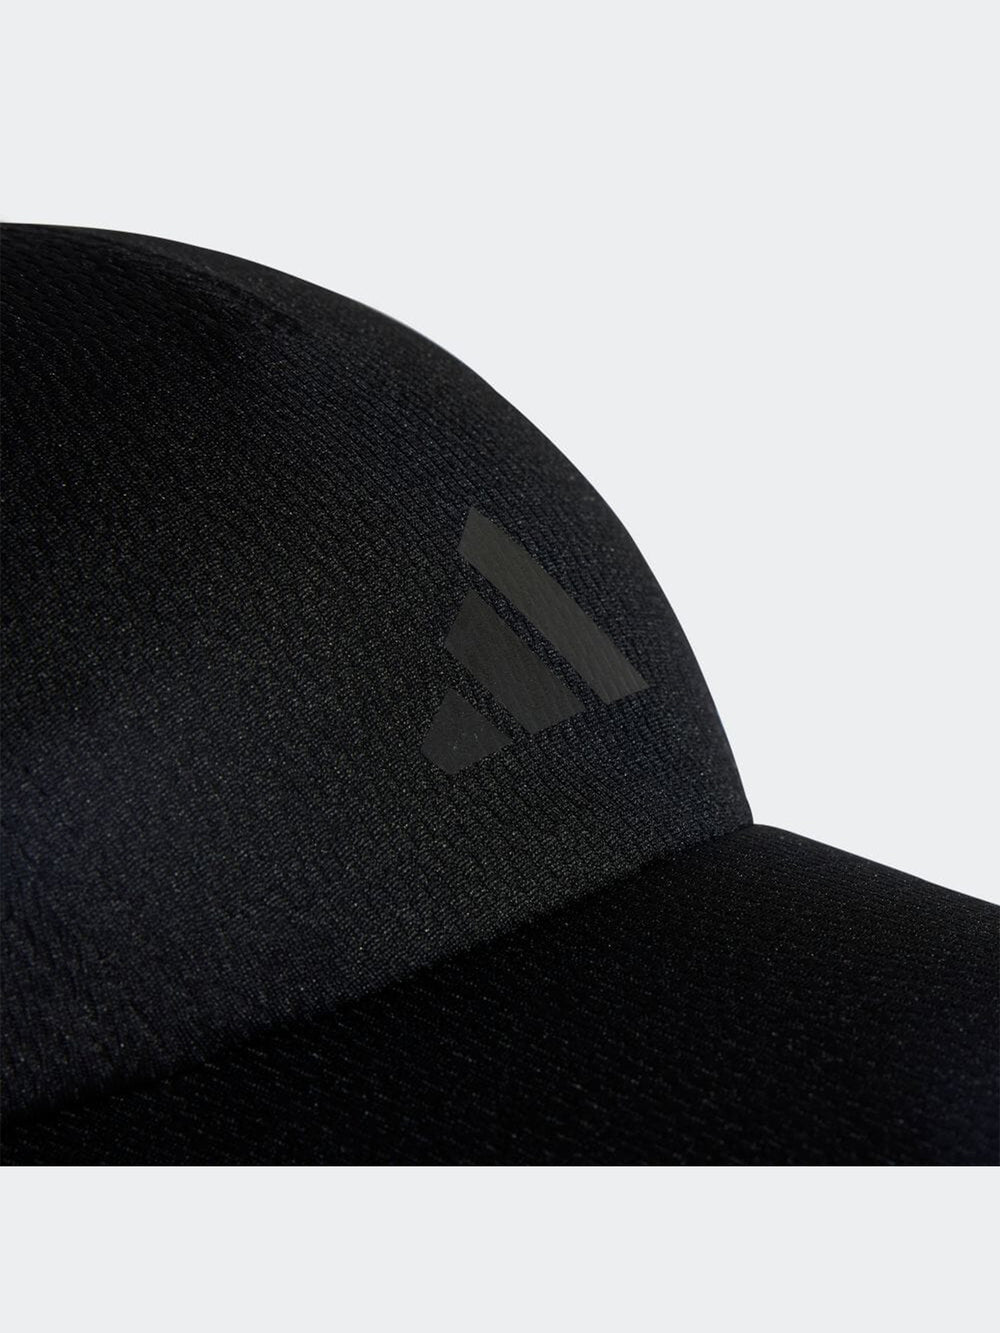 [adidas] ランニング AR メッシュキャップ / アディダス 男女兼用 帽子 紫外線対策 日除け スポーツ 23SS HT4815 [A] 20_1 - Puravida!プラヴィダ ヨガウェア ヨガマット